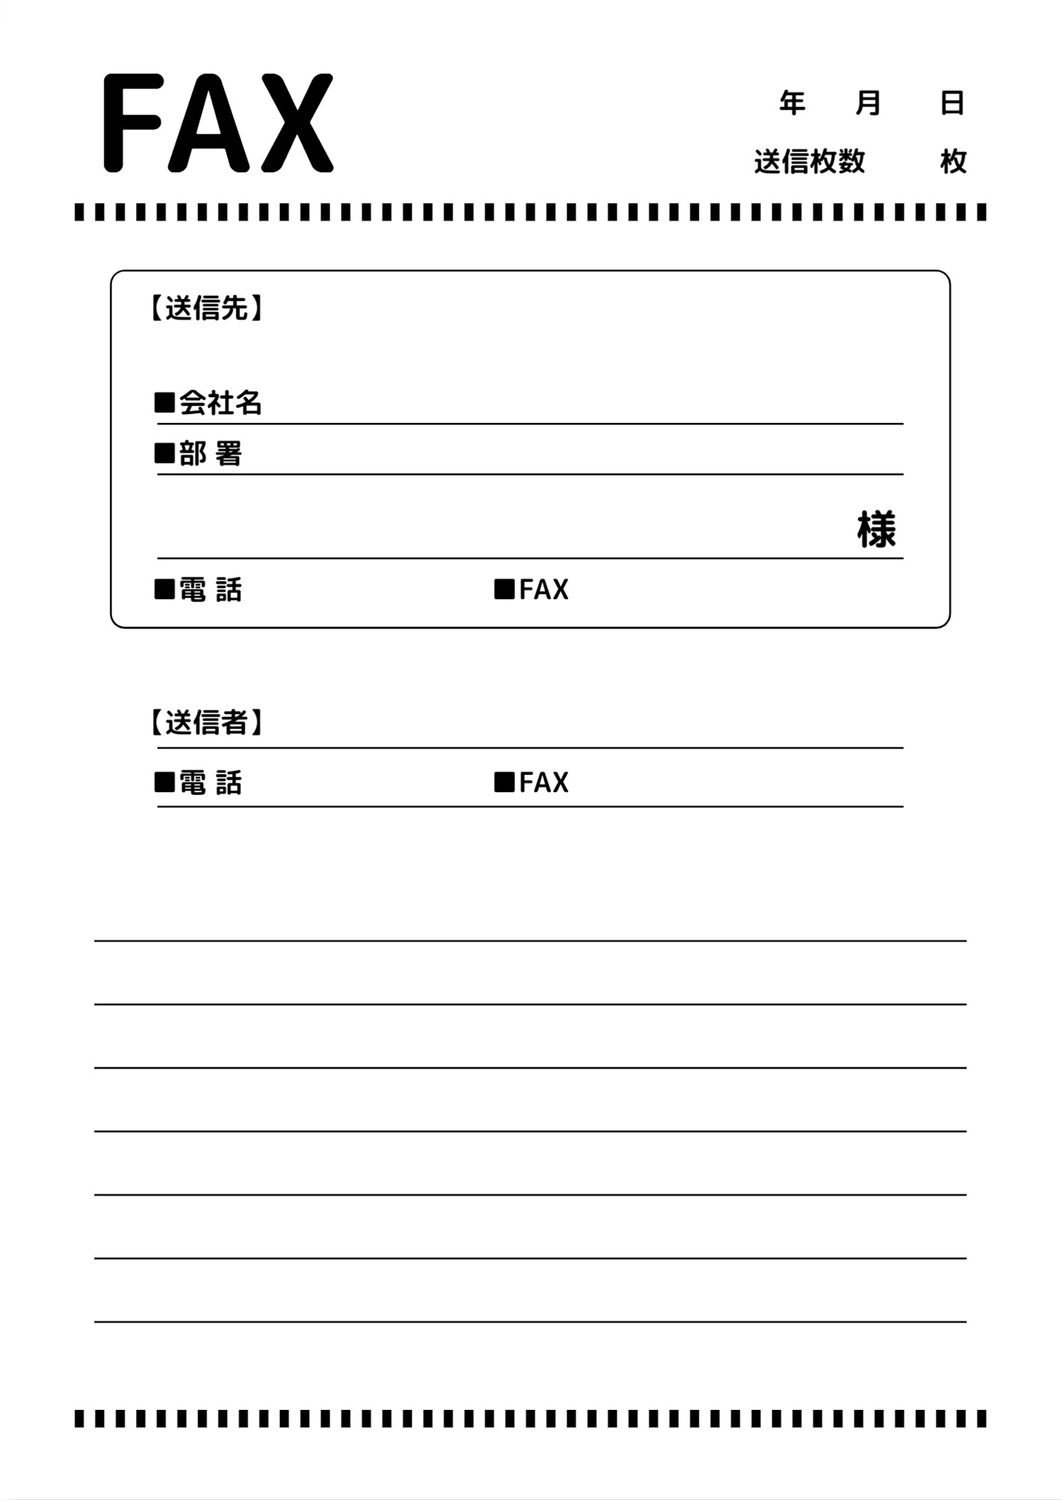 FAX送付状（罫線）, Tên công ty, nền trắng, Dễ hiểu, Tài liệu A4 mẫu